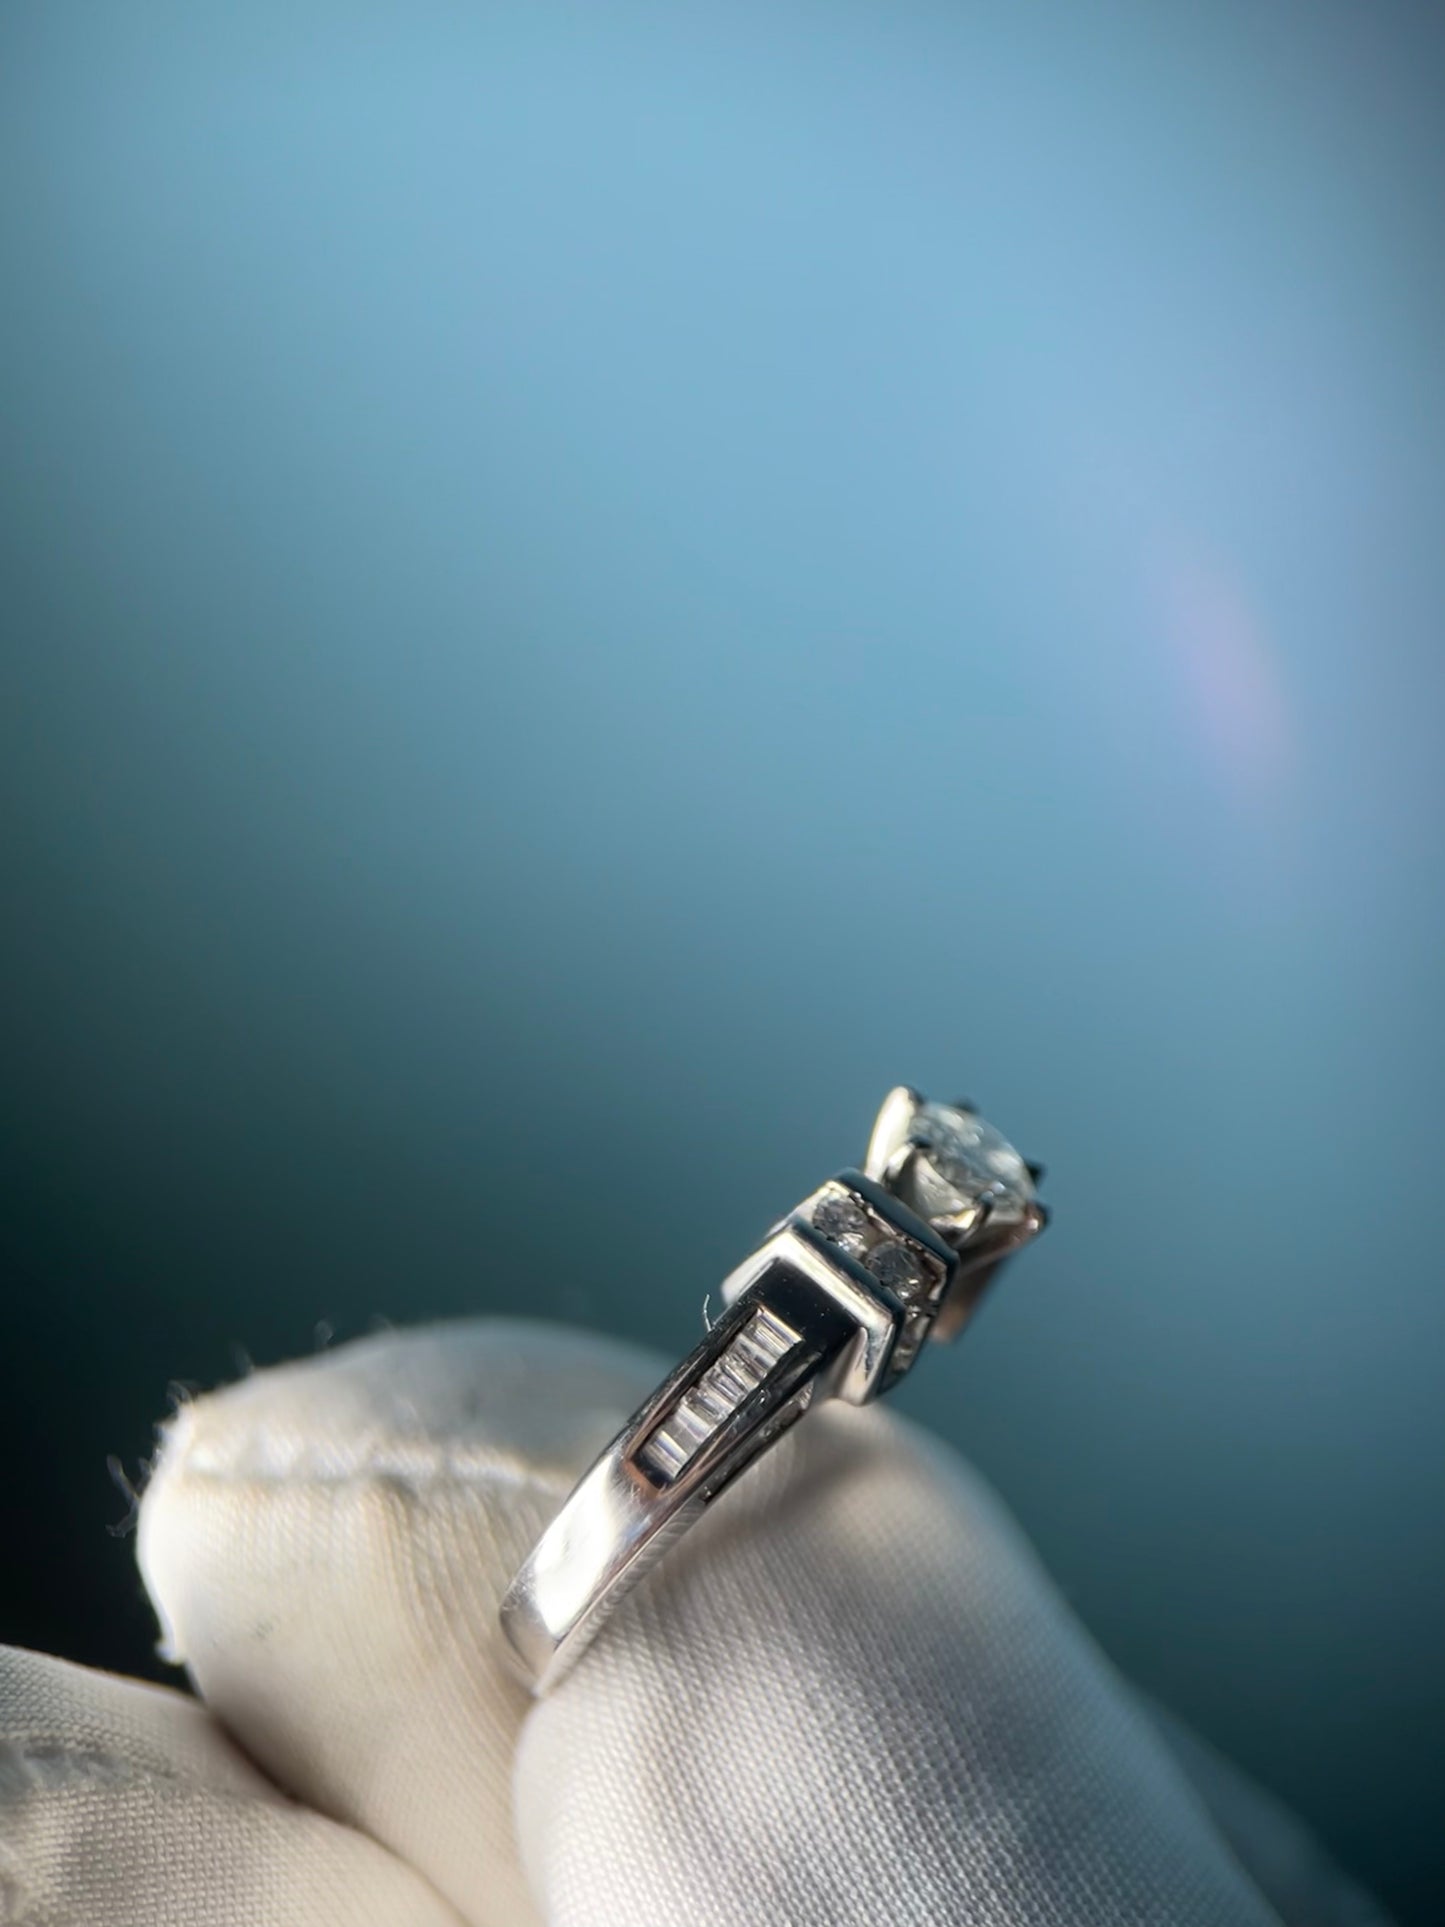 Diamond Engament Ring in Platinum